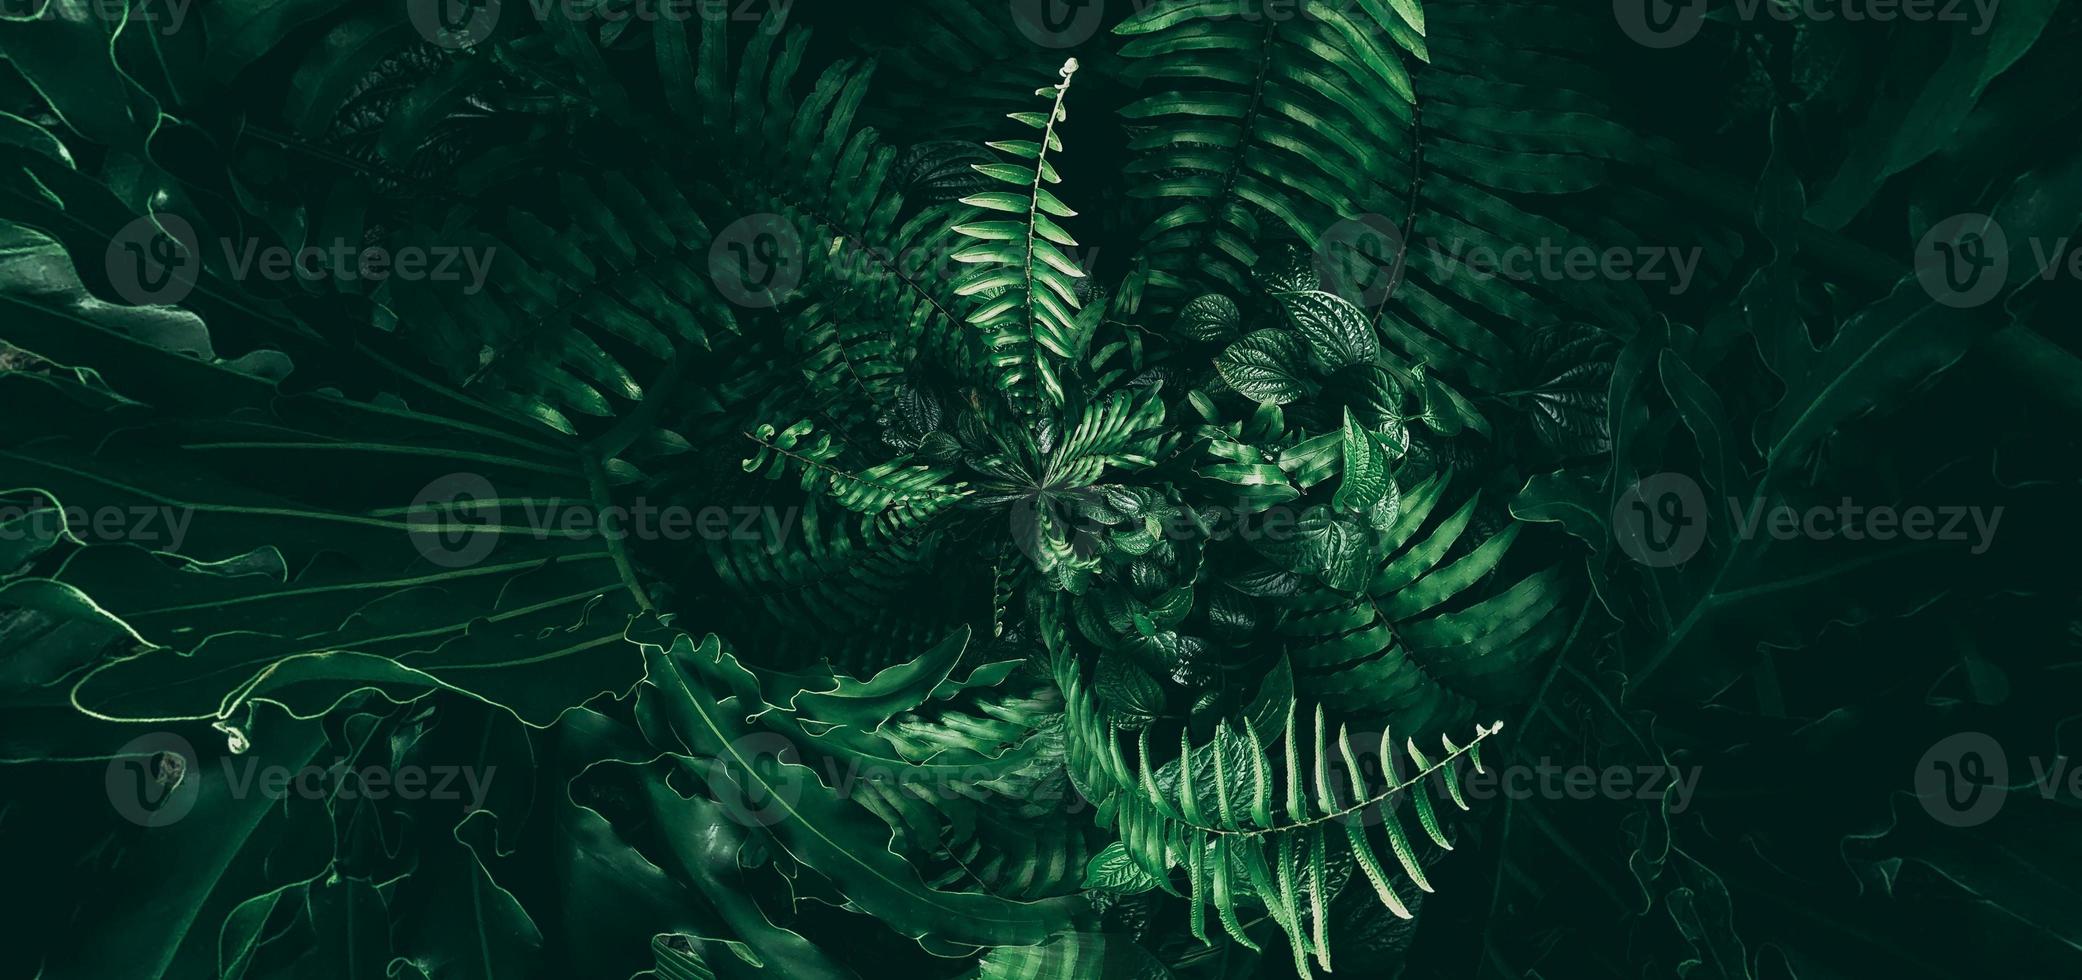 feuille verte tropicale dans un ton foncé photo